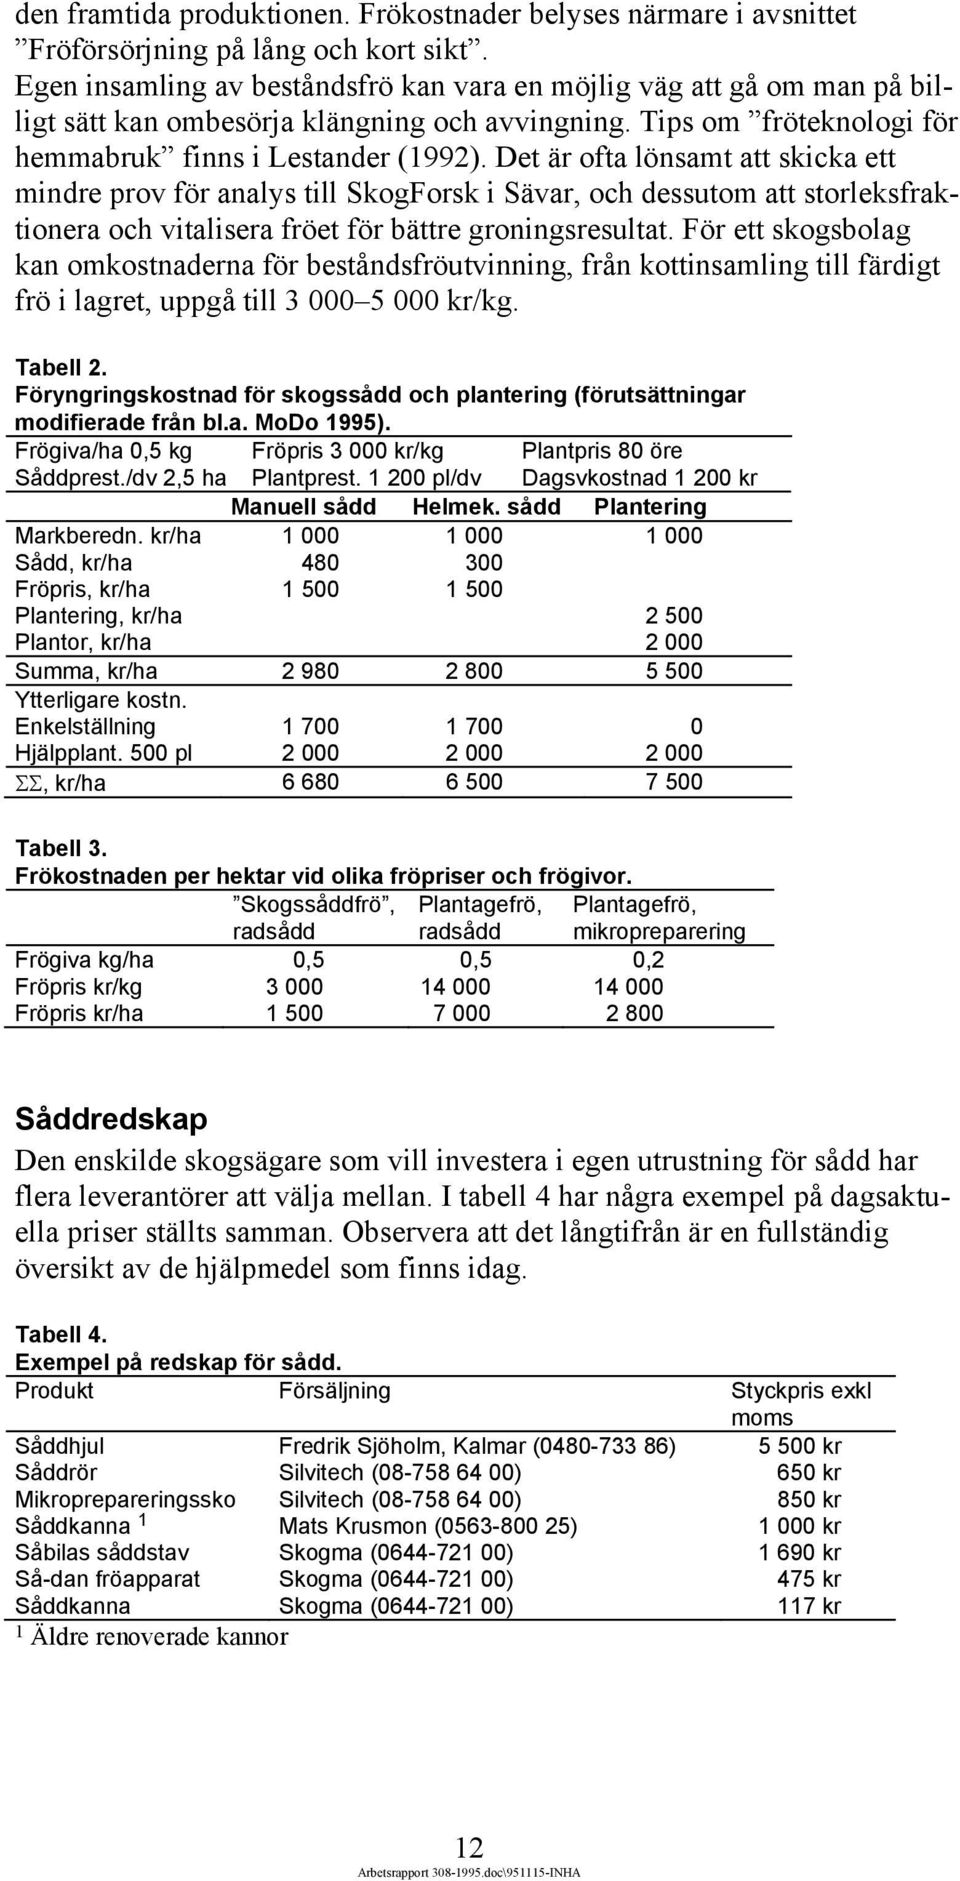 Det är ofta lönsamt att skicka ett mindre prov för analys till SkogForsk i Sävar, och dessutom att storleksfraktionera och vitalisera fröet för bättre groningsresultat.